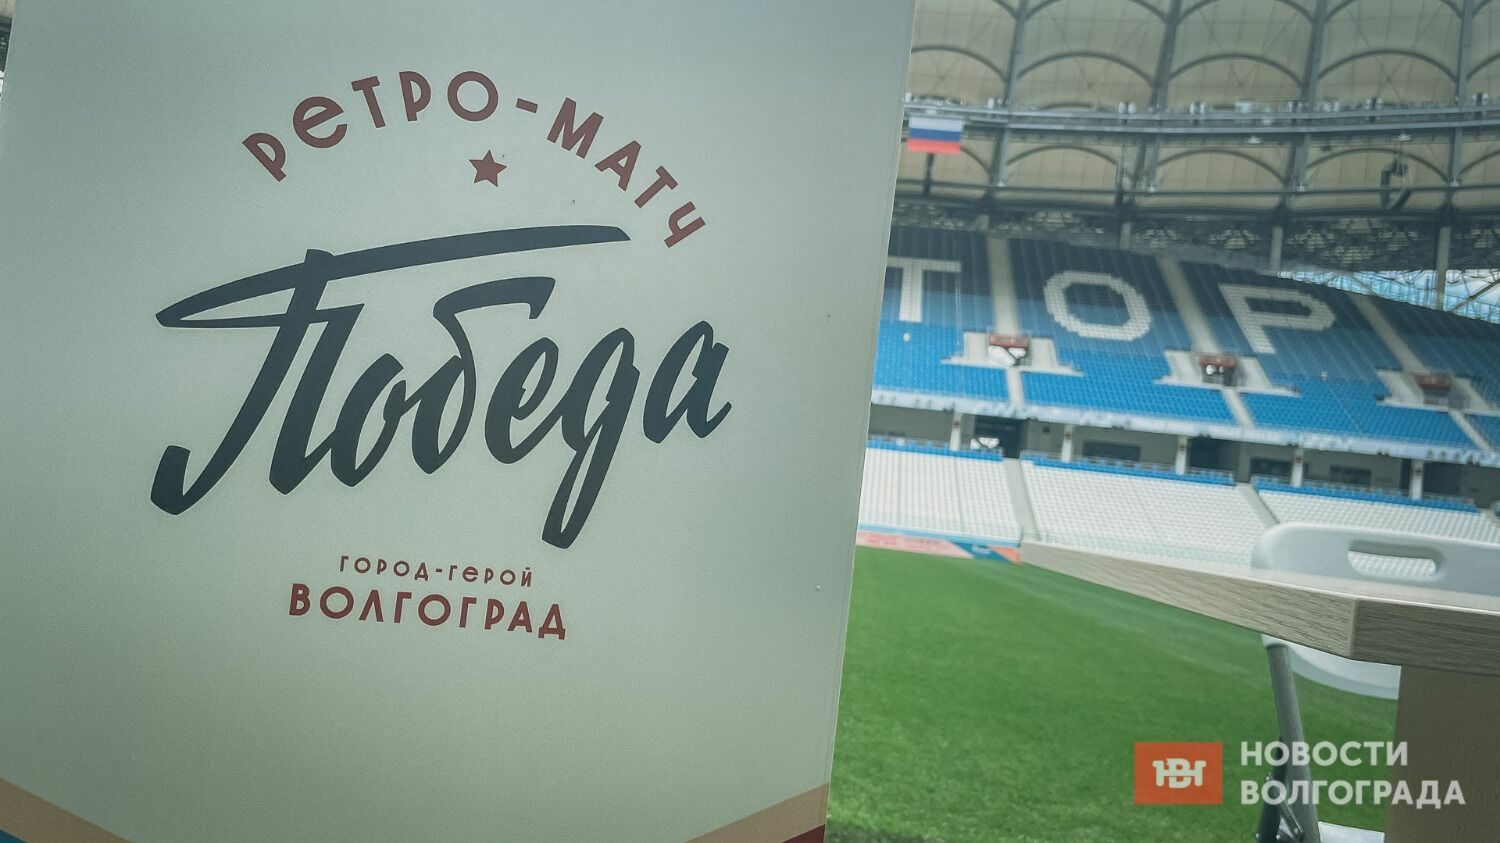 Ретро-матч пройдет в Волгограде 1 мая.